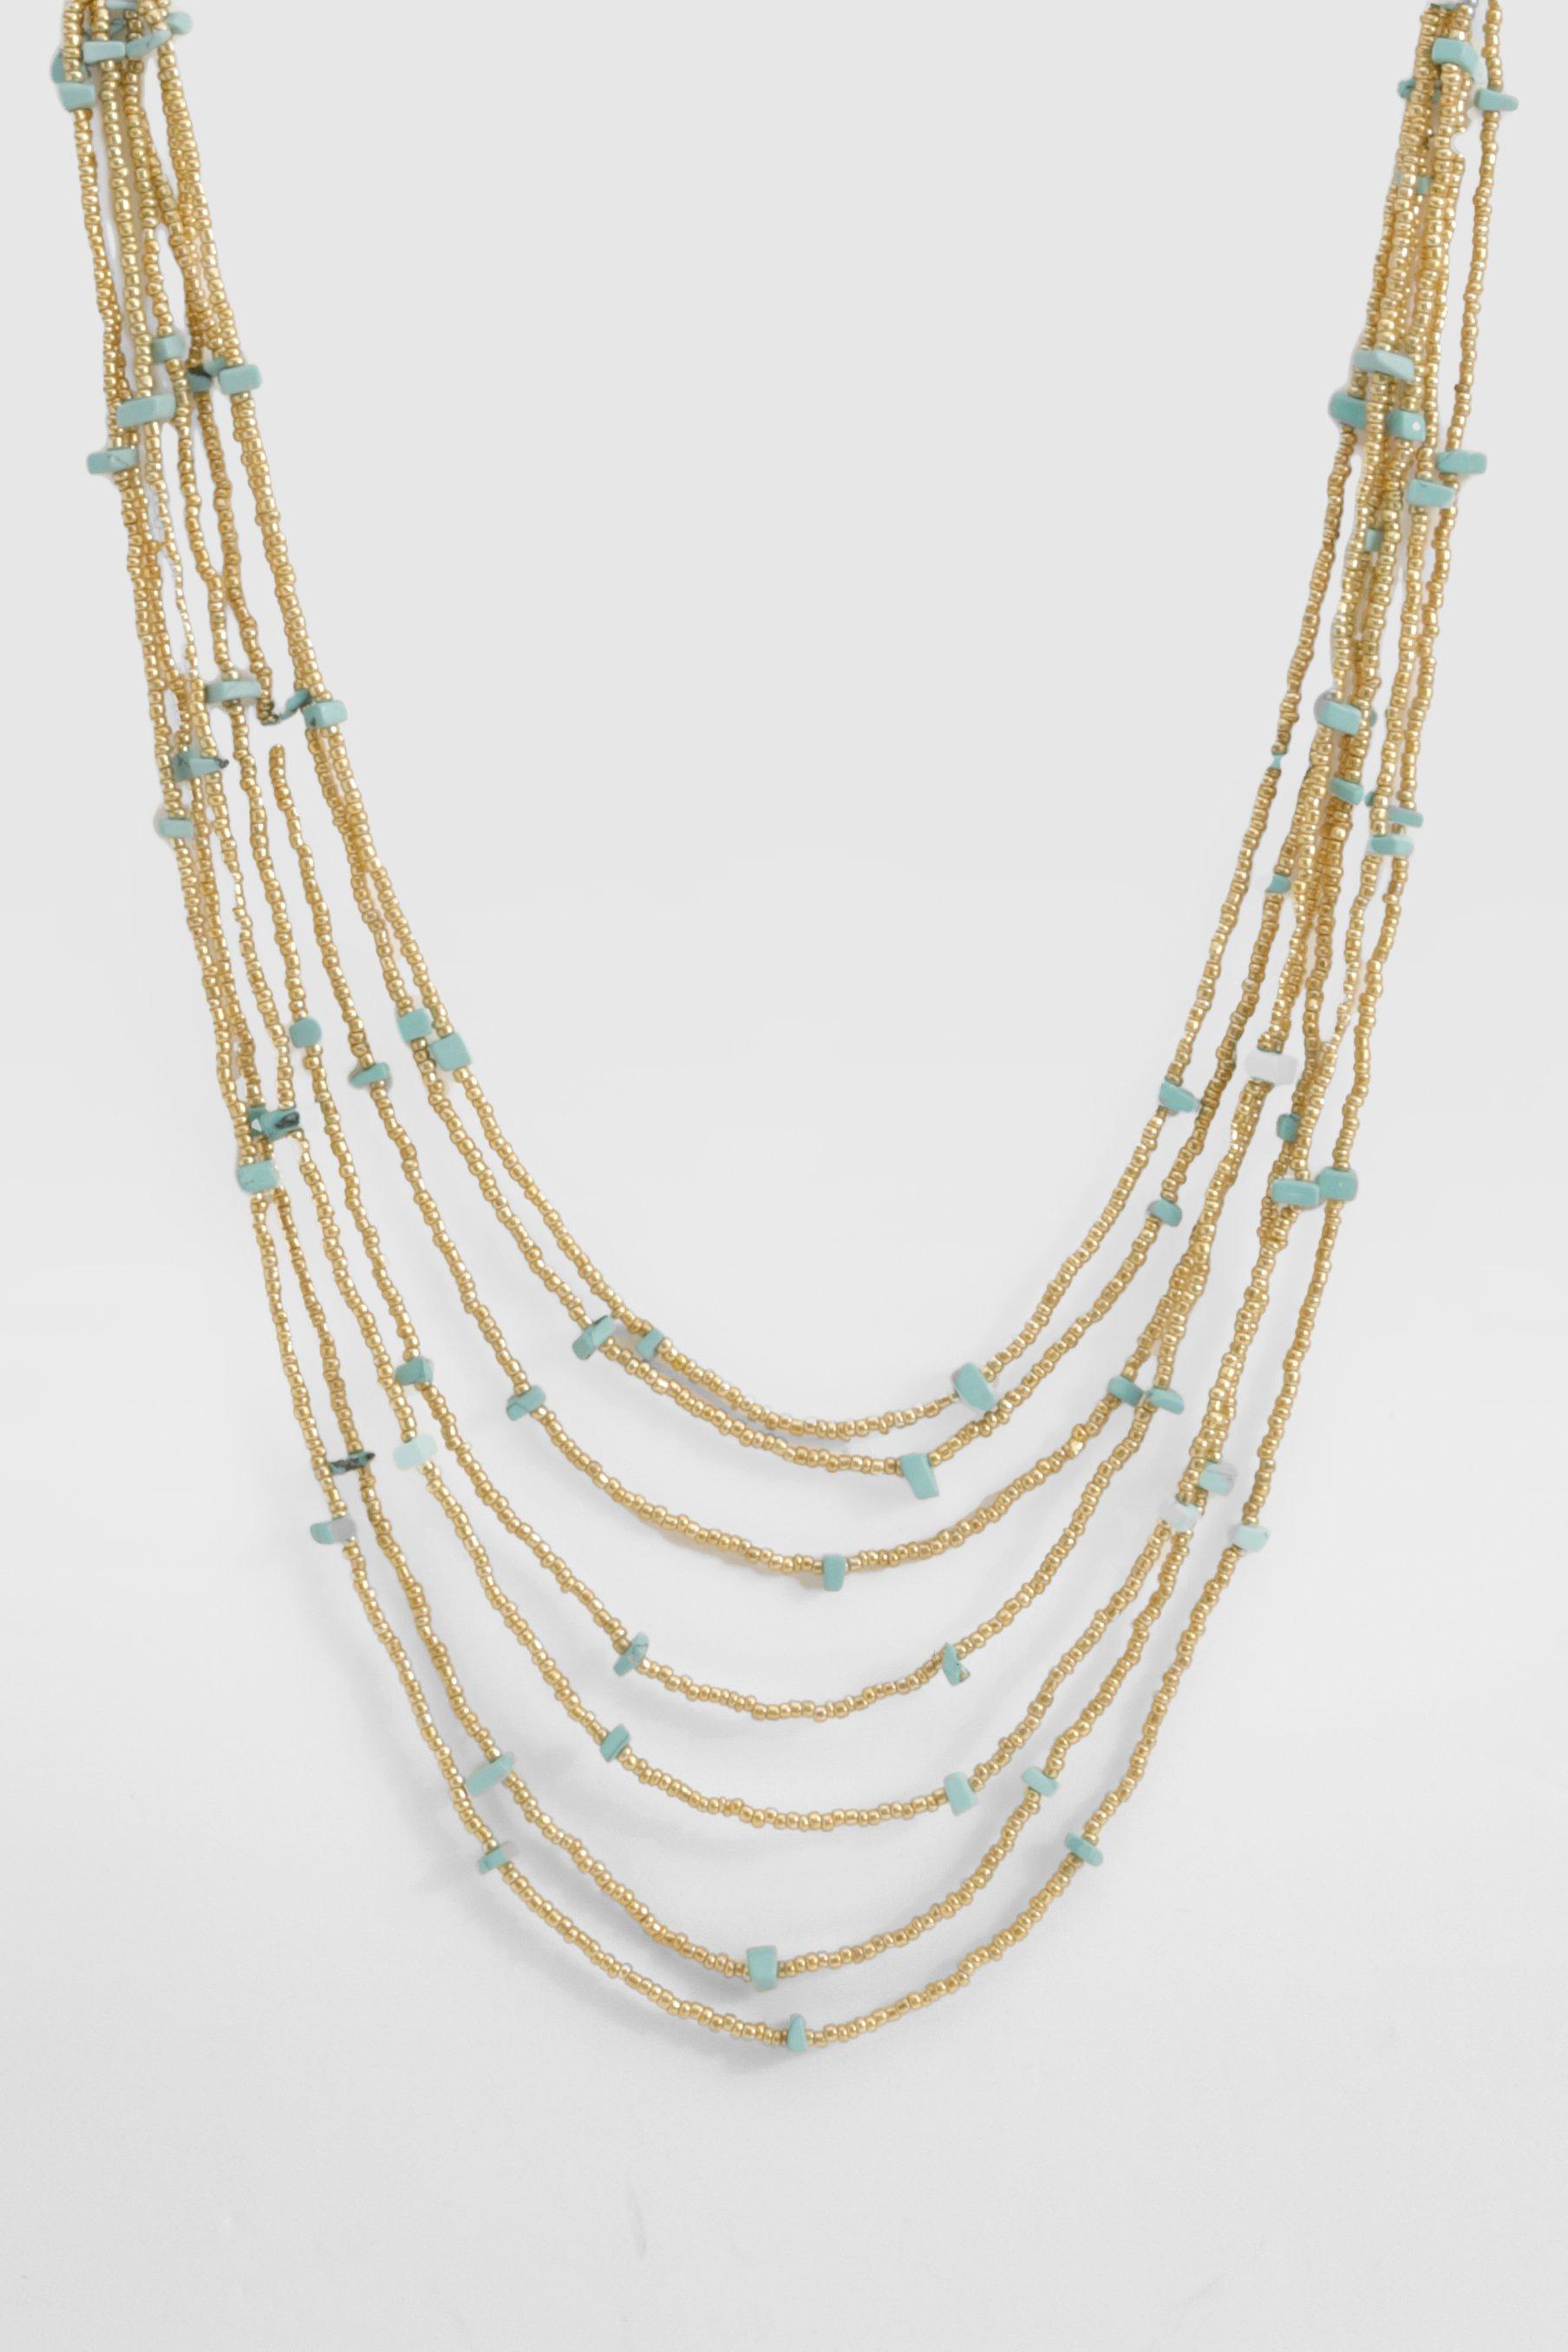 Image of Layered Beaded Necklace, Azzurro